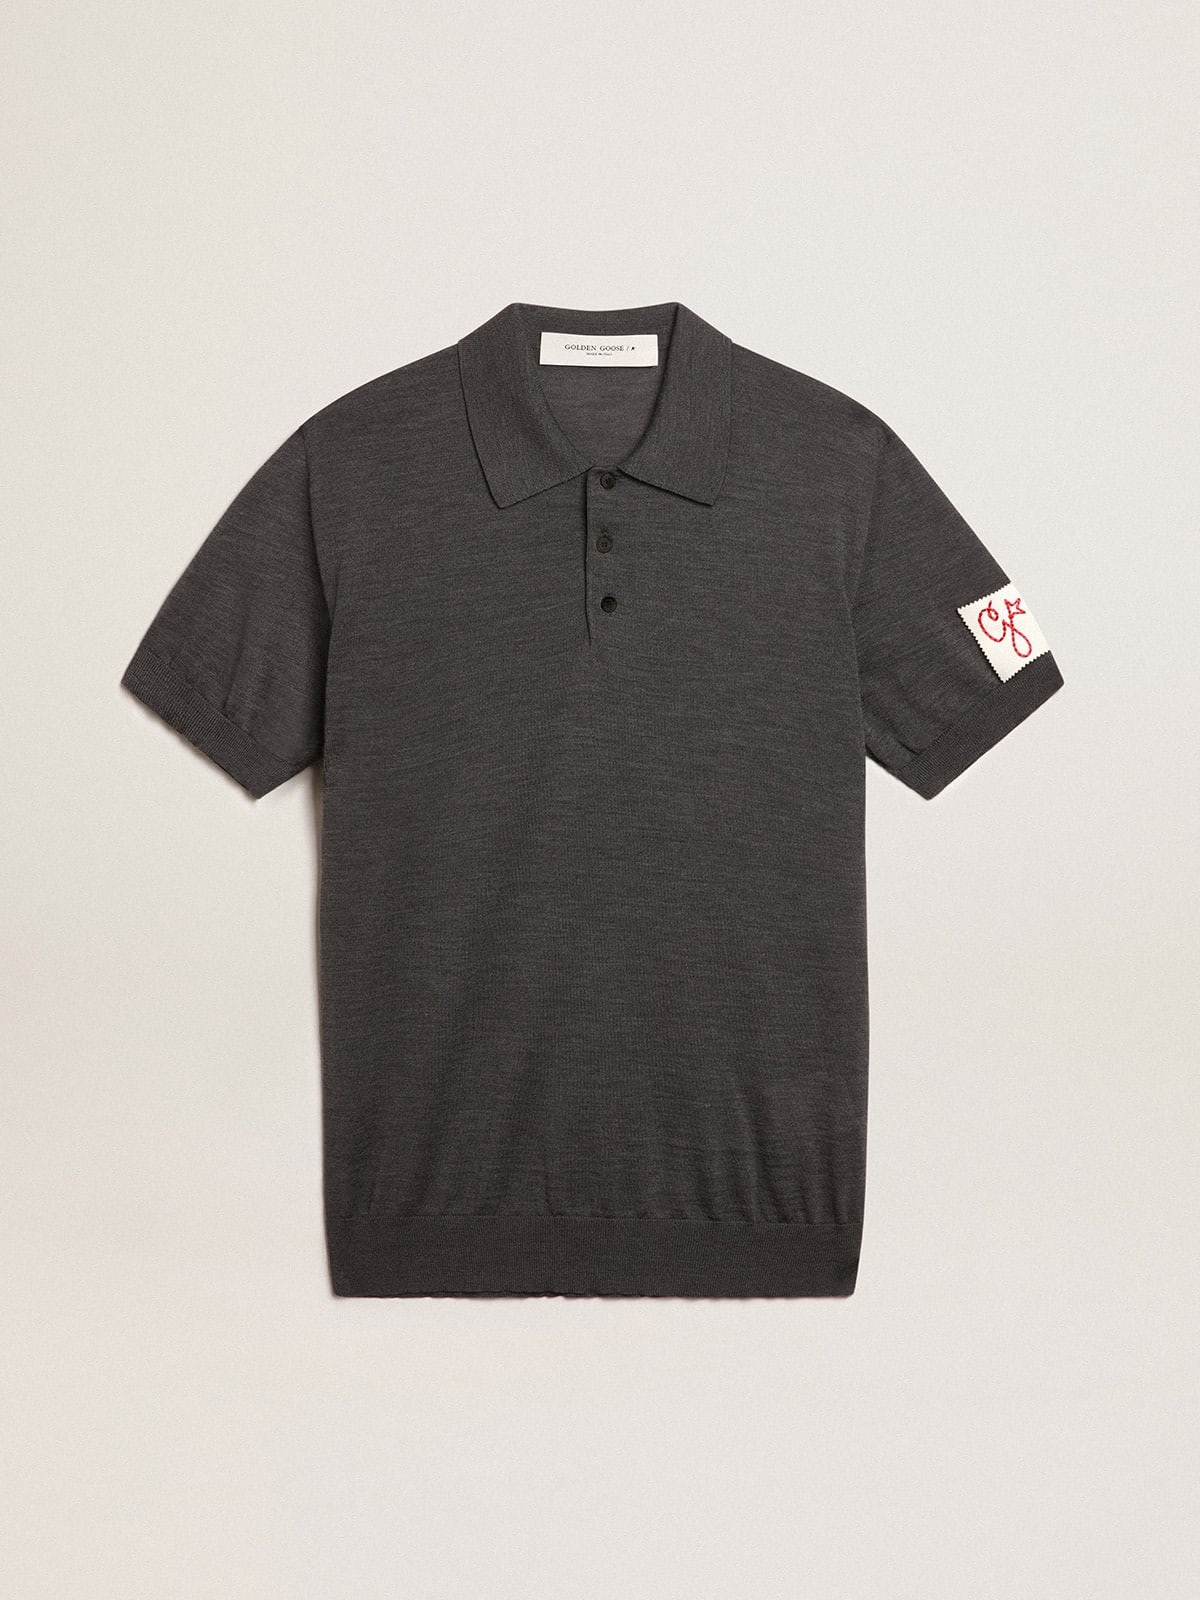 Men's short-sleeved polo shirt in gray merino wool